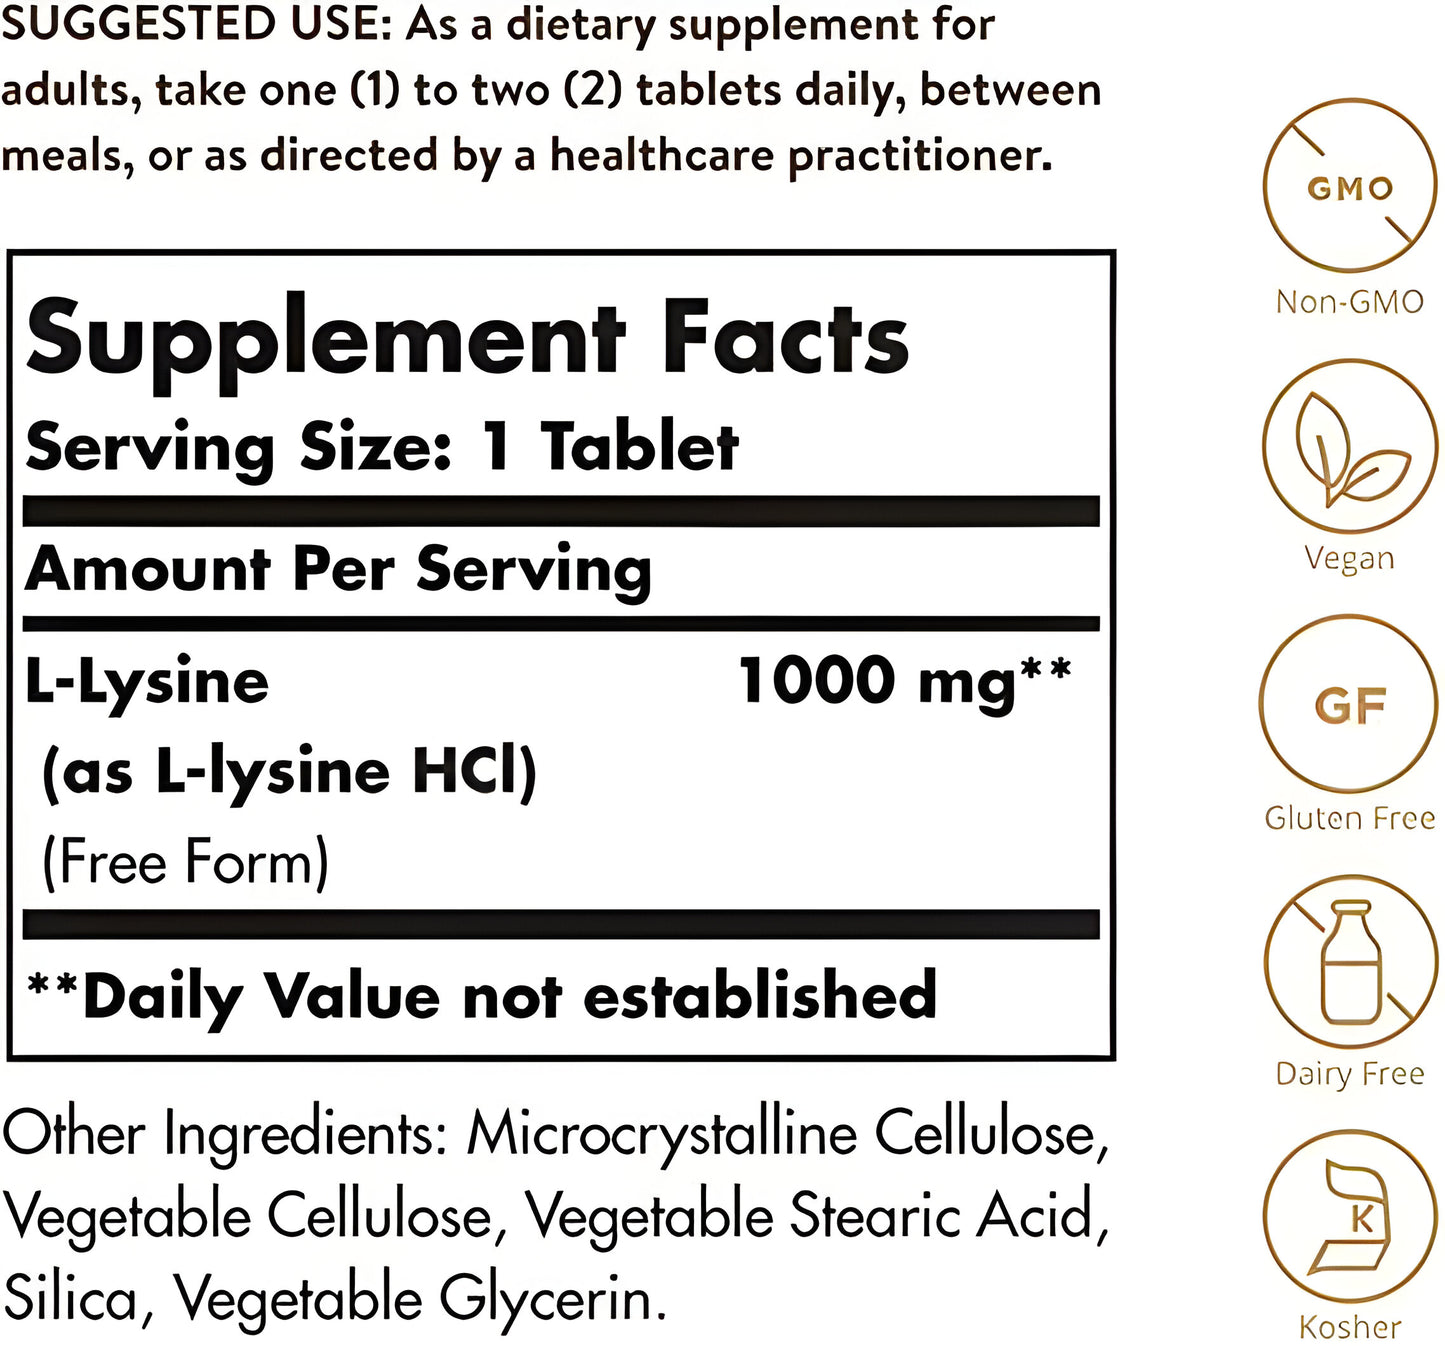 Alpha Lipoic Acid 200mg , 50 capsulas vegetables - Solgar